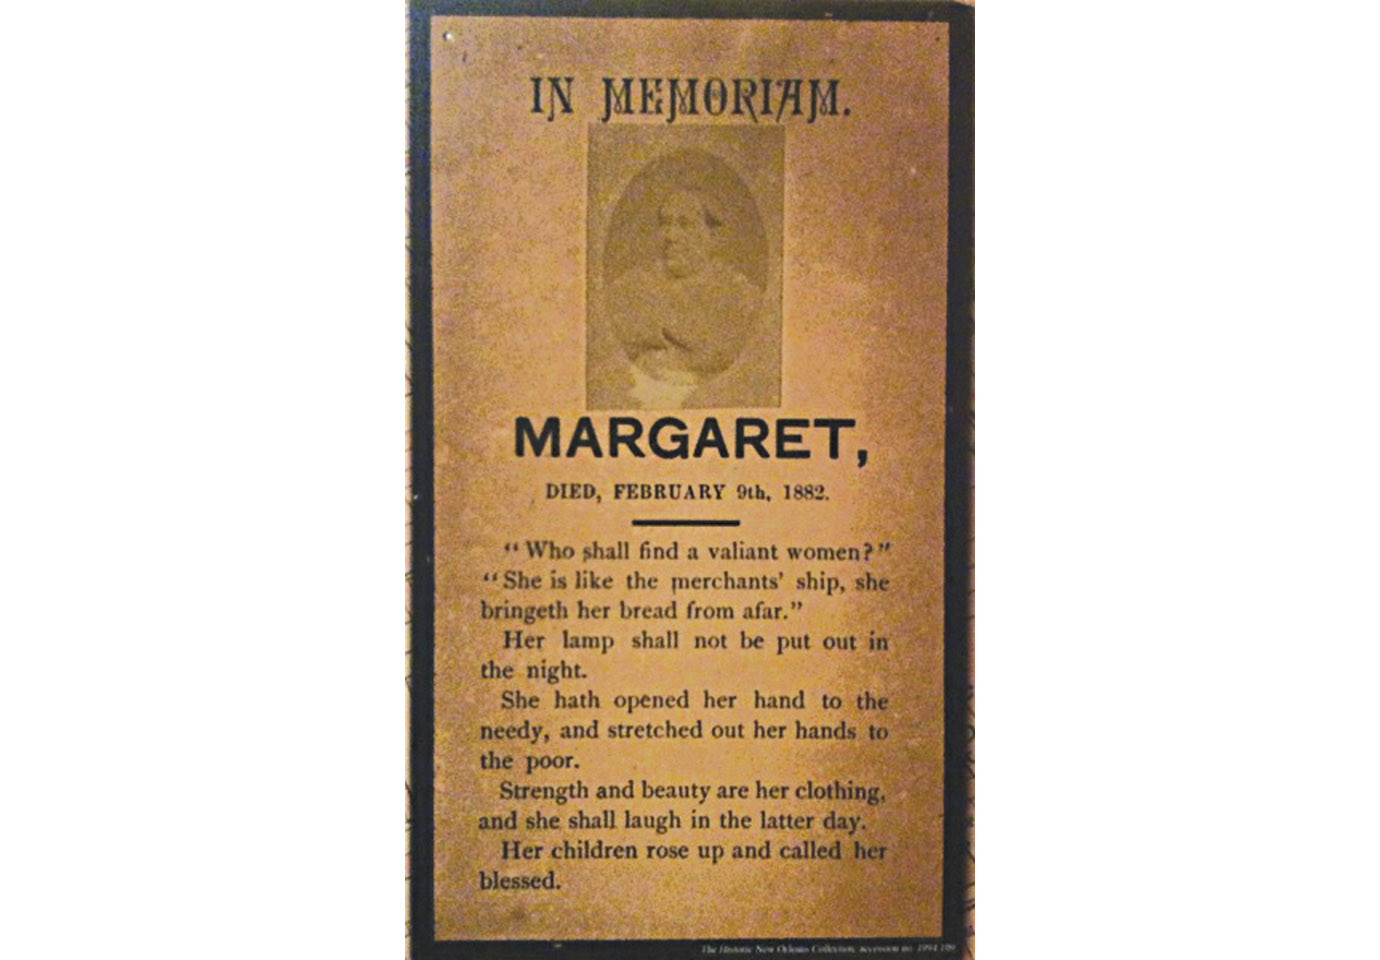 Margaret’s memorial card.